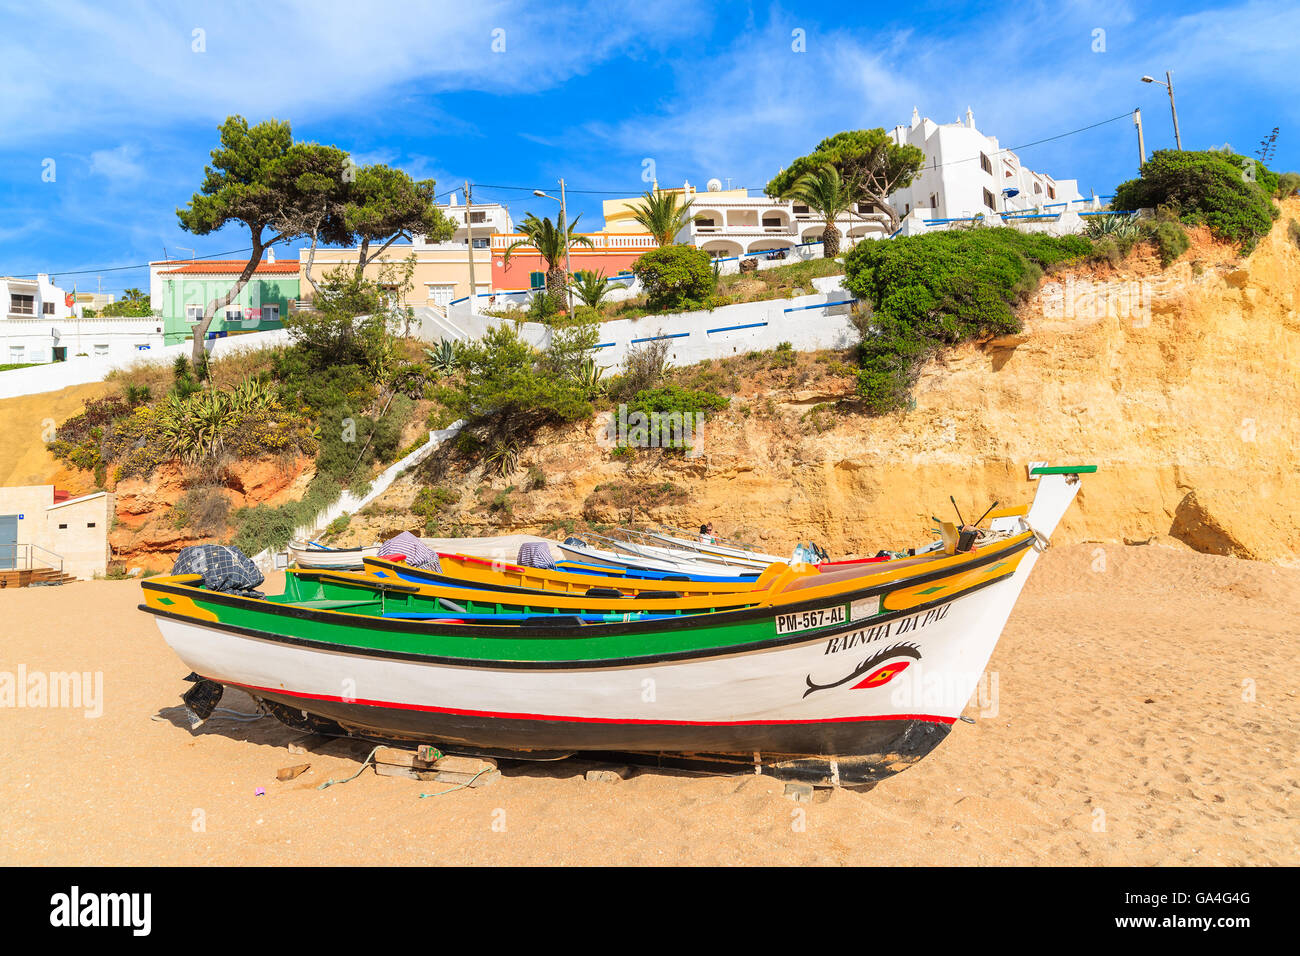 Strand von CARVOEIRO, PORTUGAL - 17. Mai 2015: typische Fischerboote am Strand in Carvoeiro Küstendorf. Carvoeiro ist beliebtes Urlaubsziel Urlaubsort an der Algarve-Küste. Stockfoto